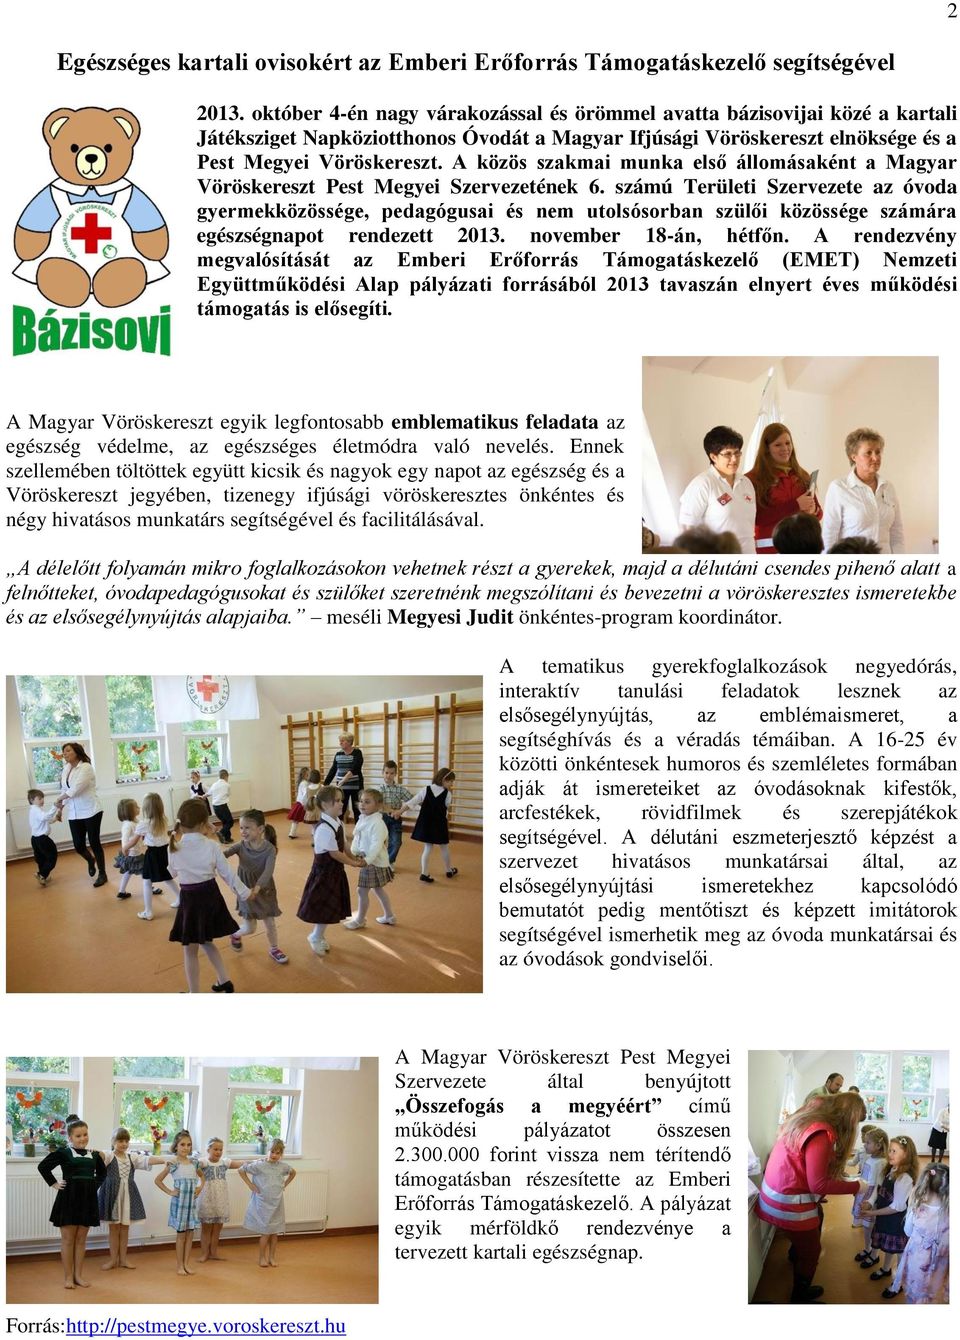 A közös szakmai munka első állomásaként a Magyar Vöröskereszt Pest Megyei Szervezetének 6.